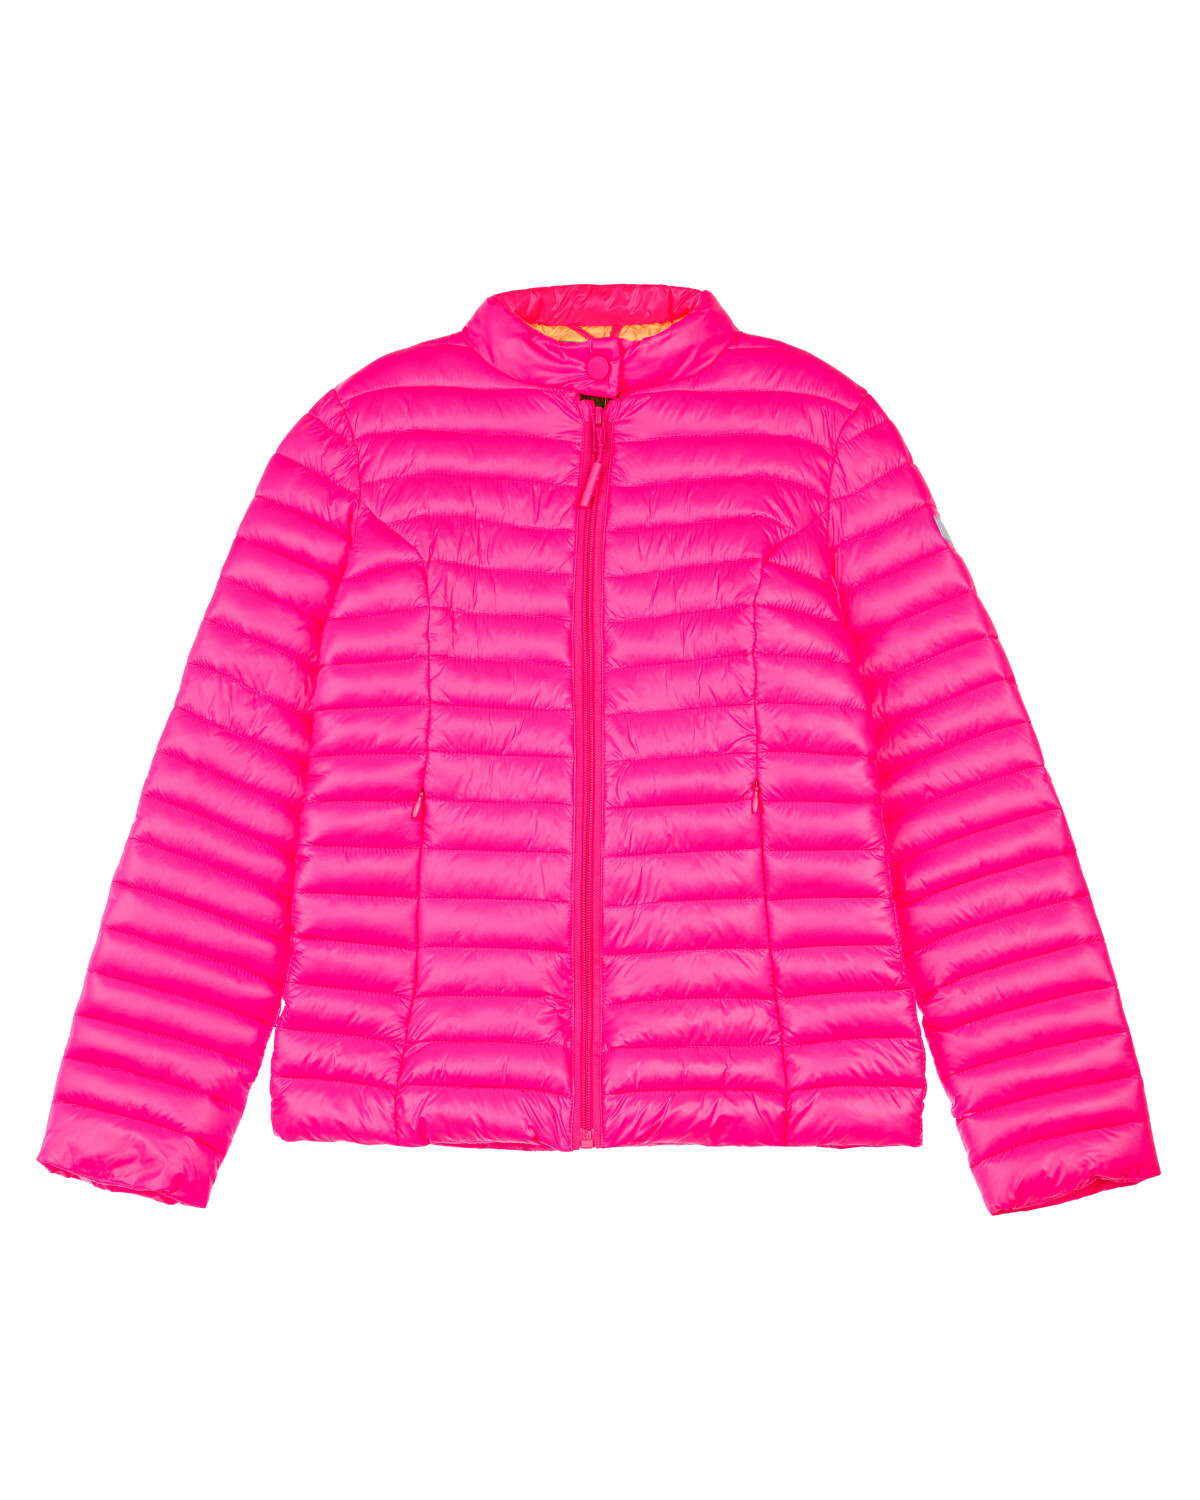 Куртка детская PlayToday 12421502, розовый, 140 наушники yamaha tw e3a розовый хорошее состояние